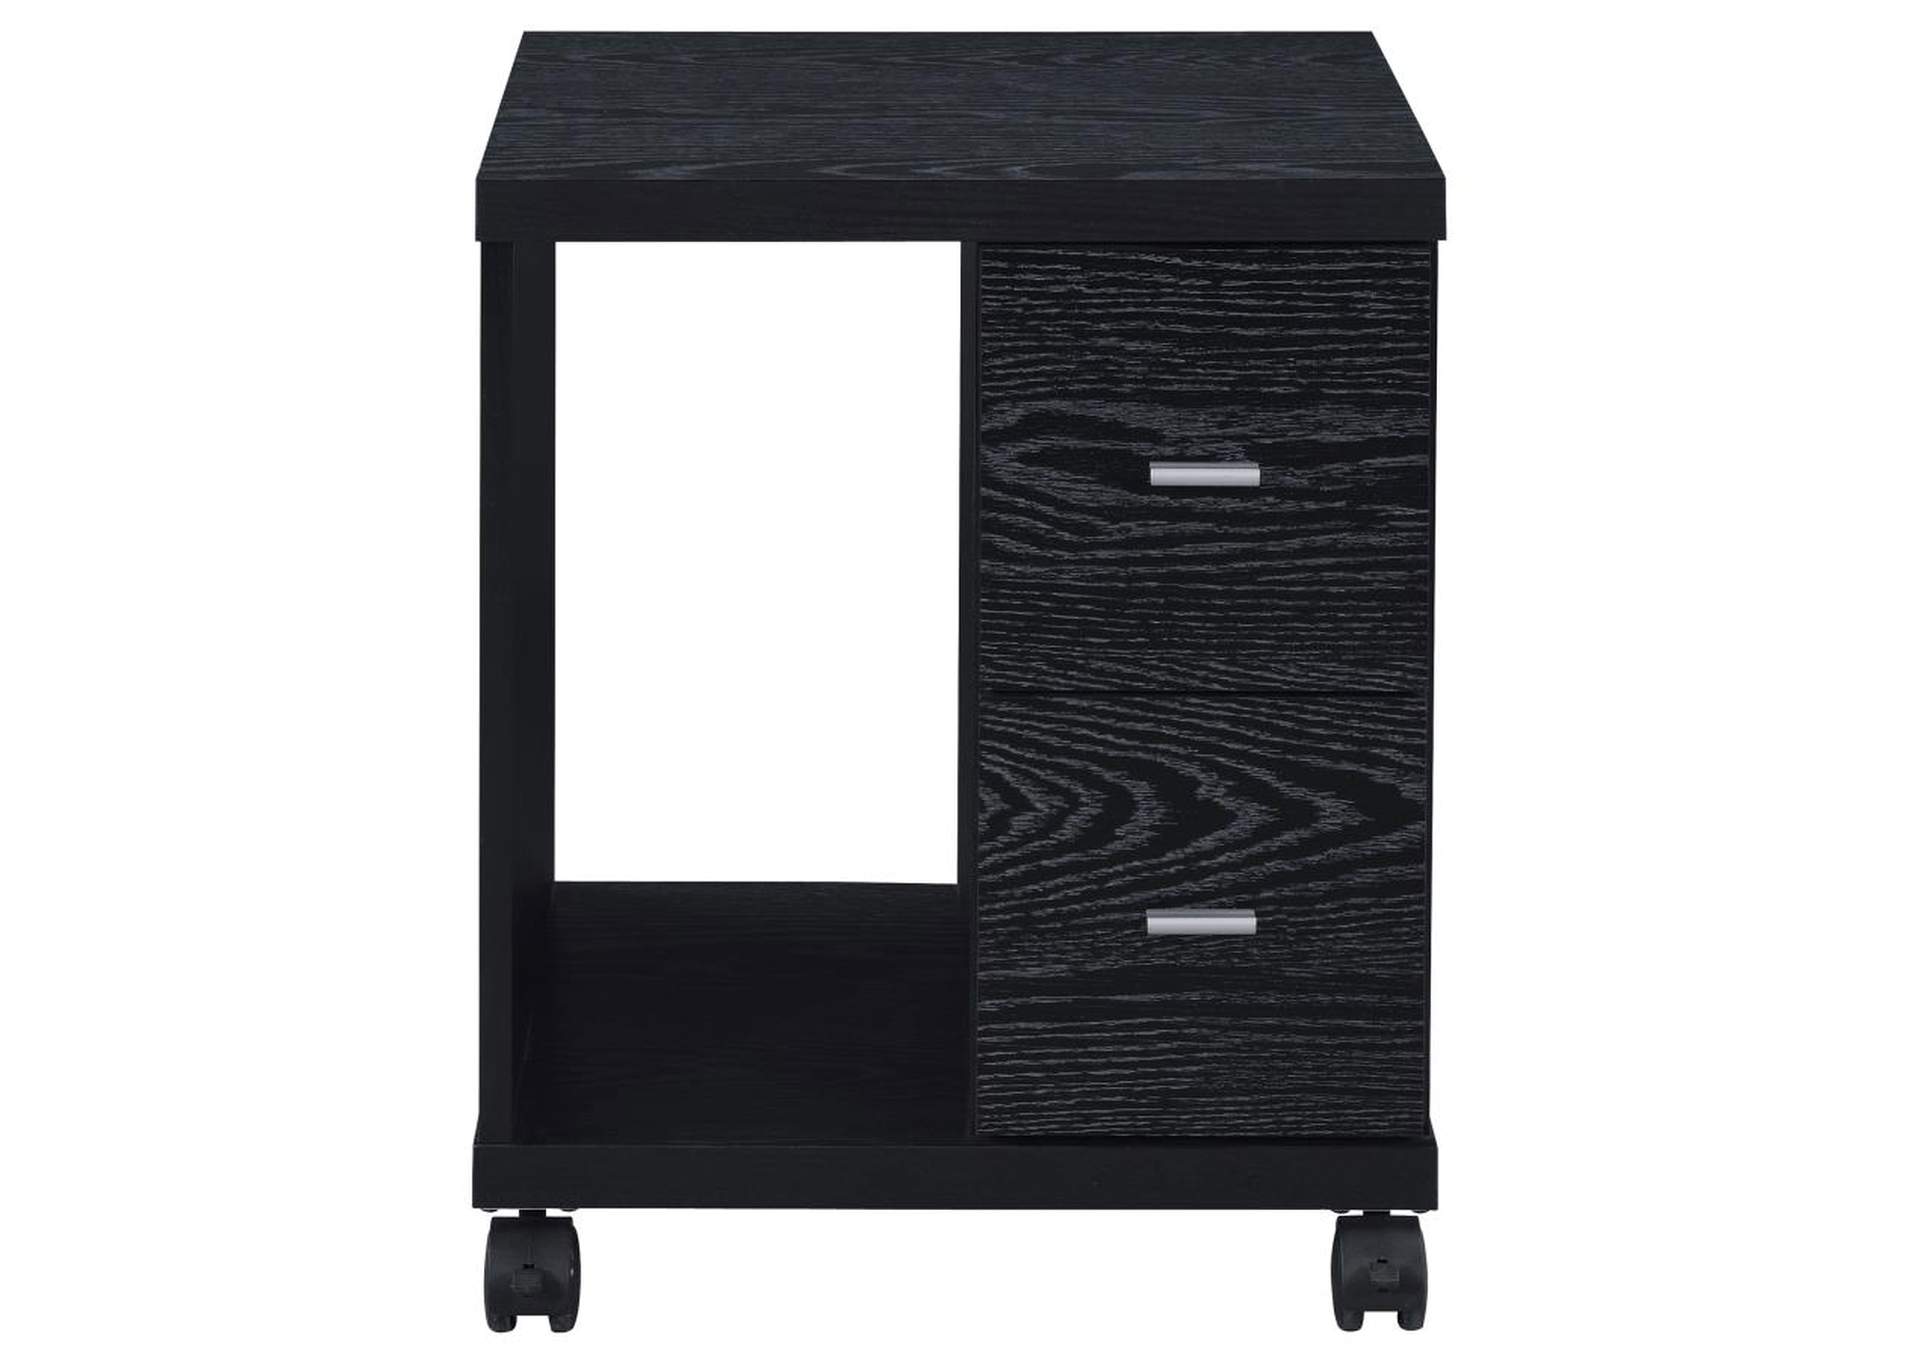 Russell 2-Drawer Cpu Stand Black Oak,Coaster Furniture